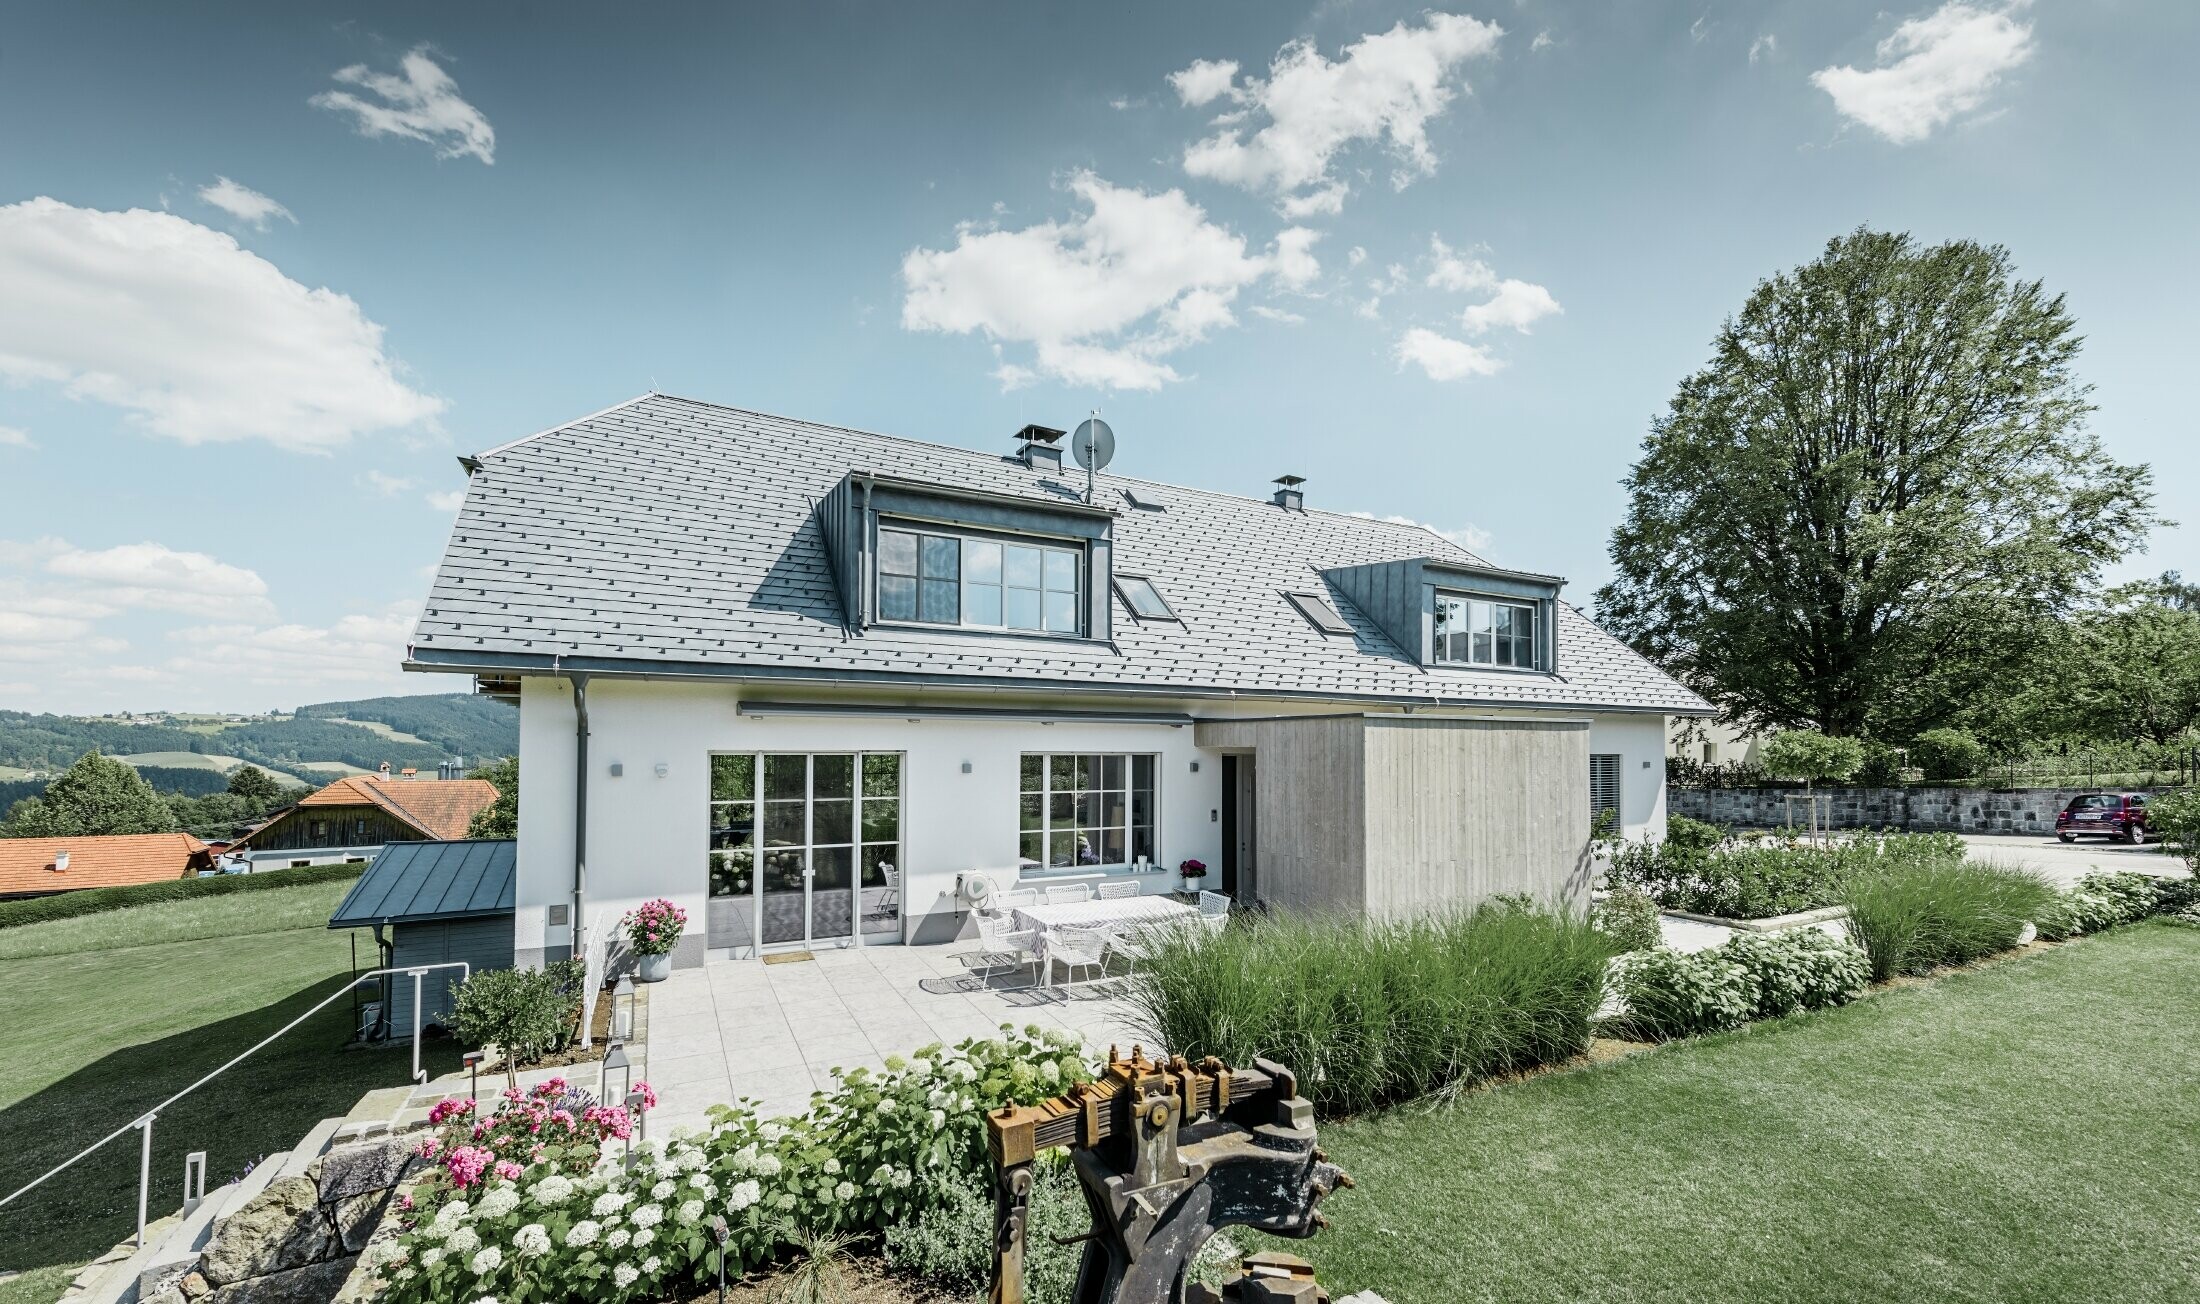 Klassisk enebolig med halvvalmtak – Huset med takrenovering med PREFA-takshingel i steingrå med vakkert opparbeidet hage og romslig terrasse.